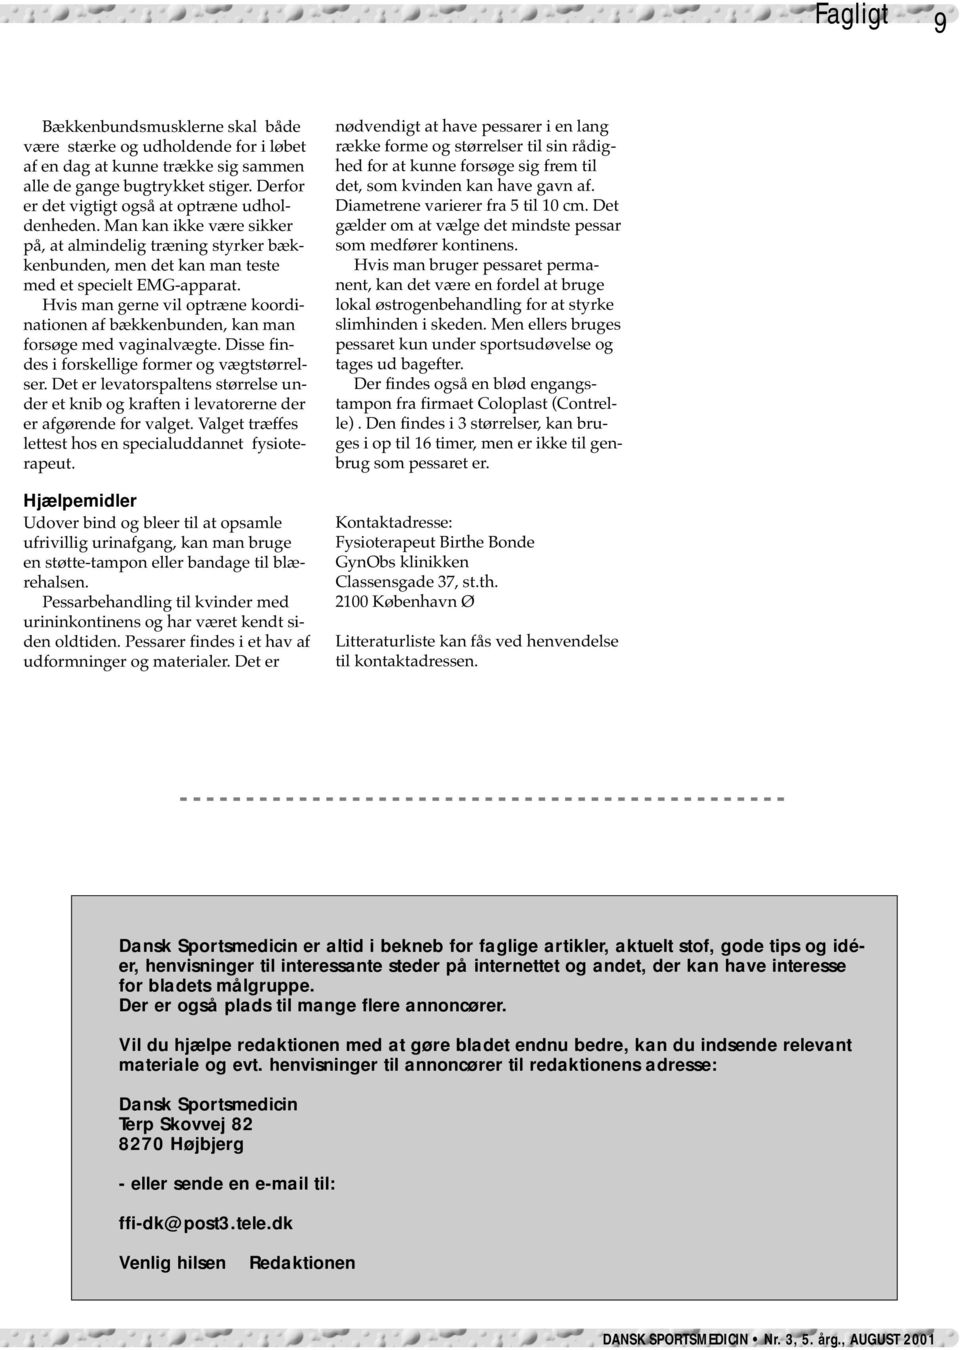 SPORTSMEDICIN DANSK BÆKKENBUNDEN OG INKONTINENS KVINDER OG KORSBÅNDSSKADER.  NR. 3, 5. årgang, AUGUST 2001 ISSN - PDF Free Download